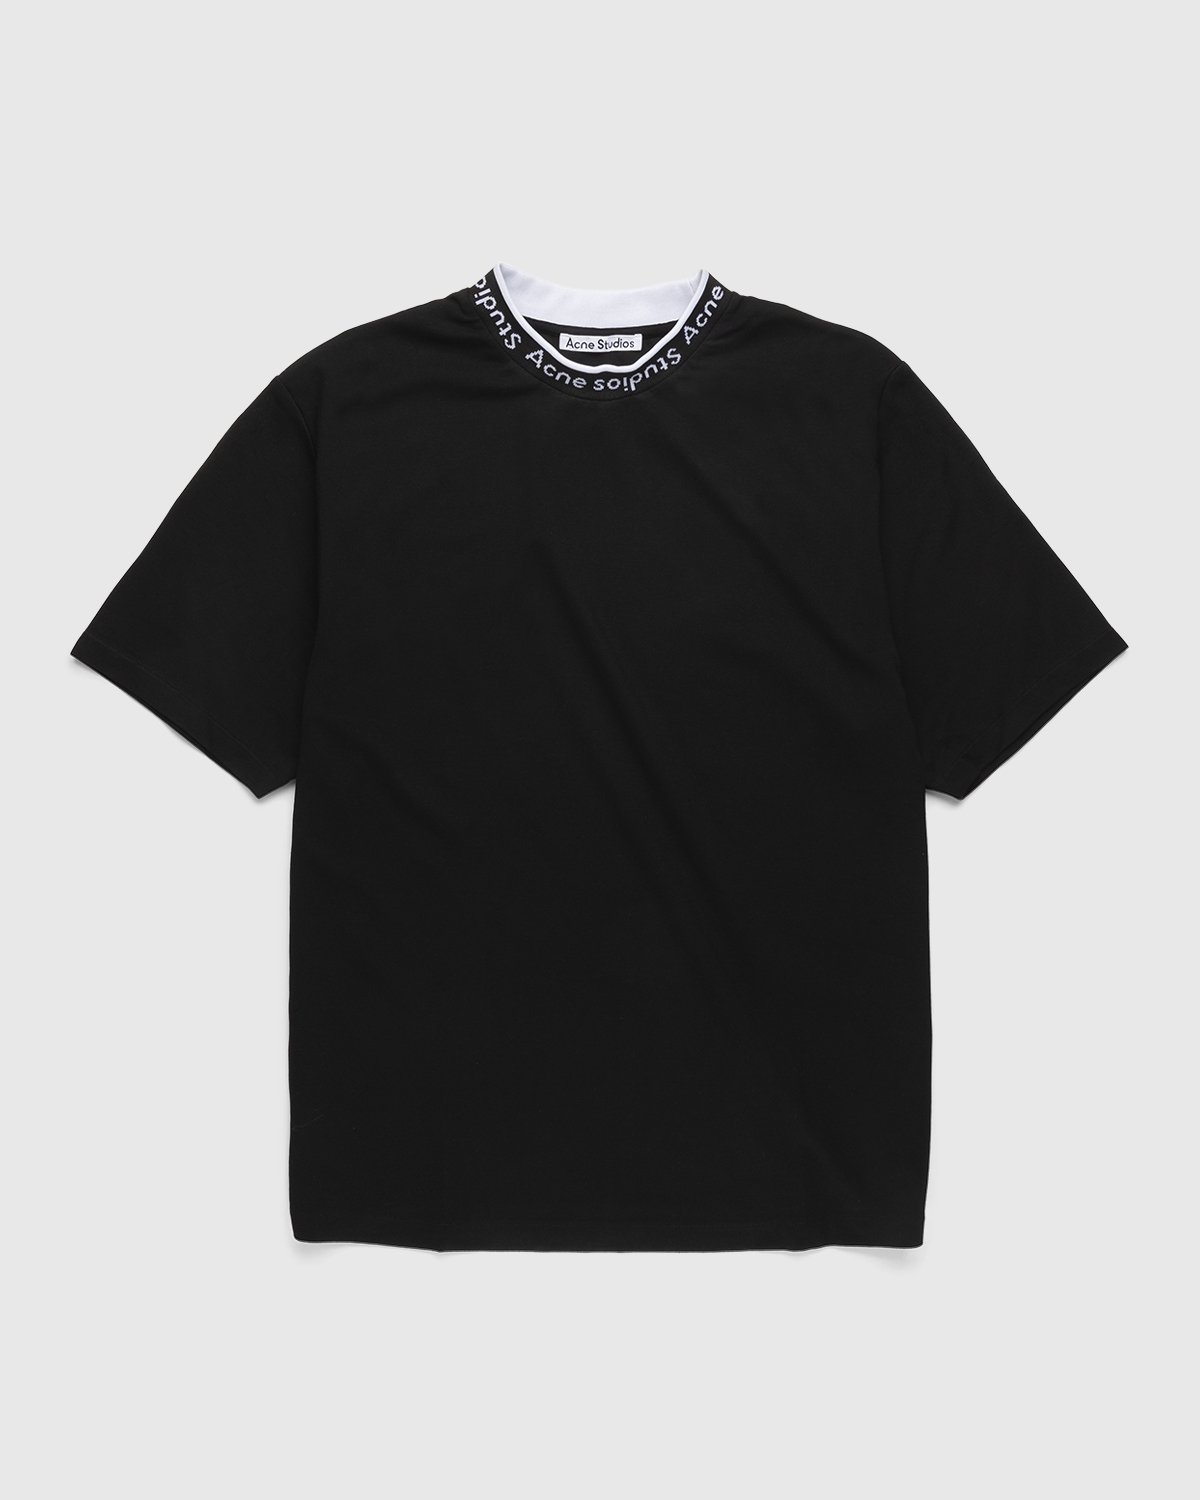 Acne Studios - Logo Rib T-Shirt Black - Clothing - Black - Image 1